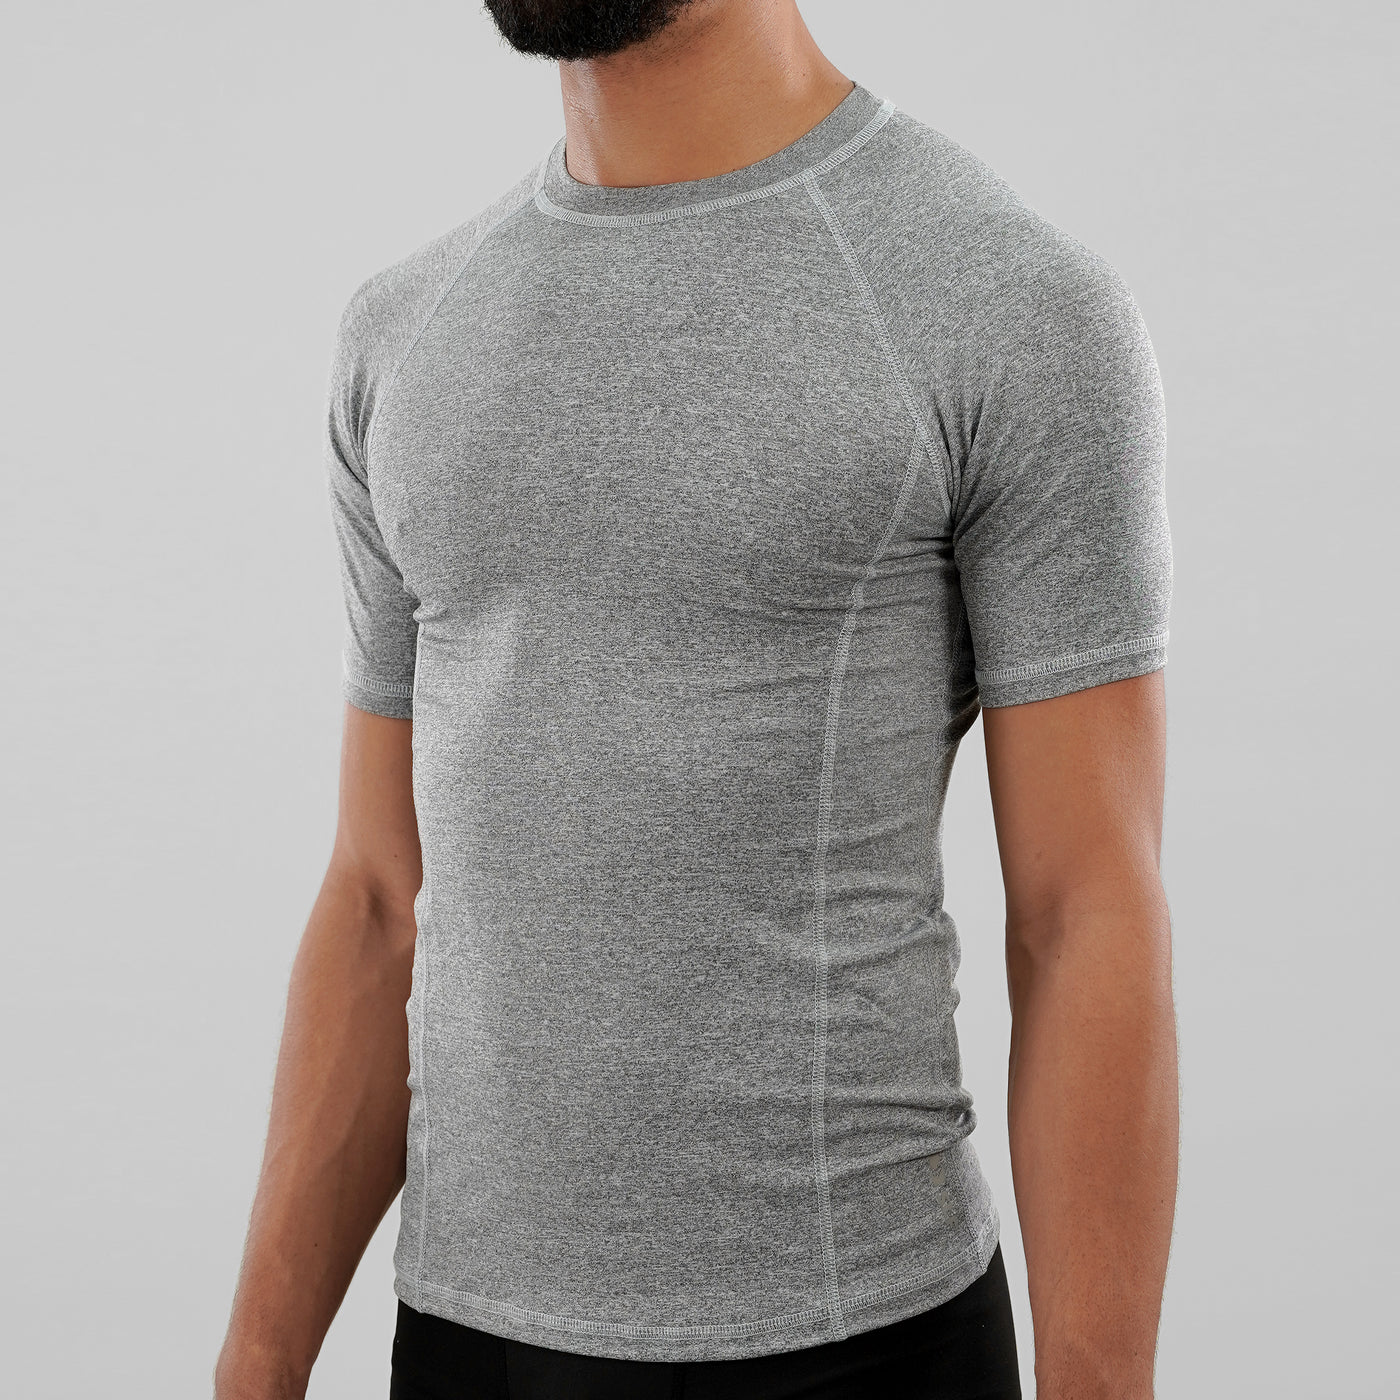 Melange Gray Compression Shirt